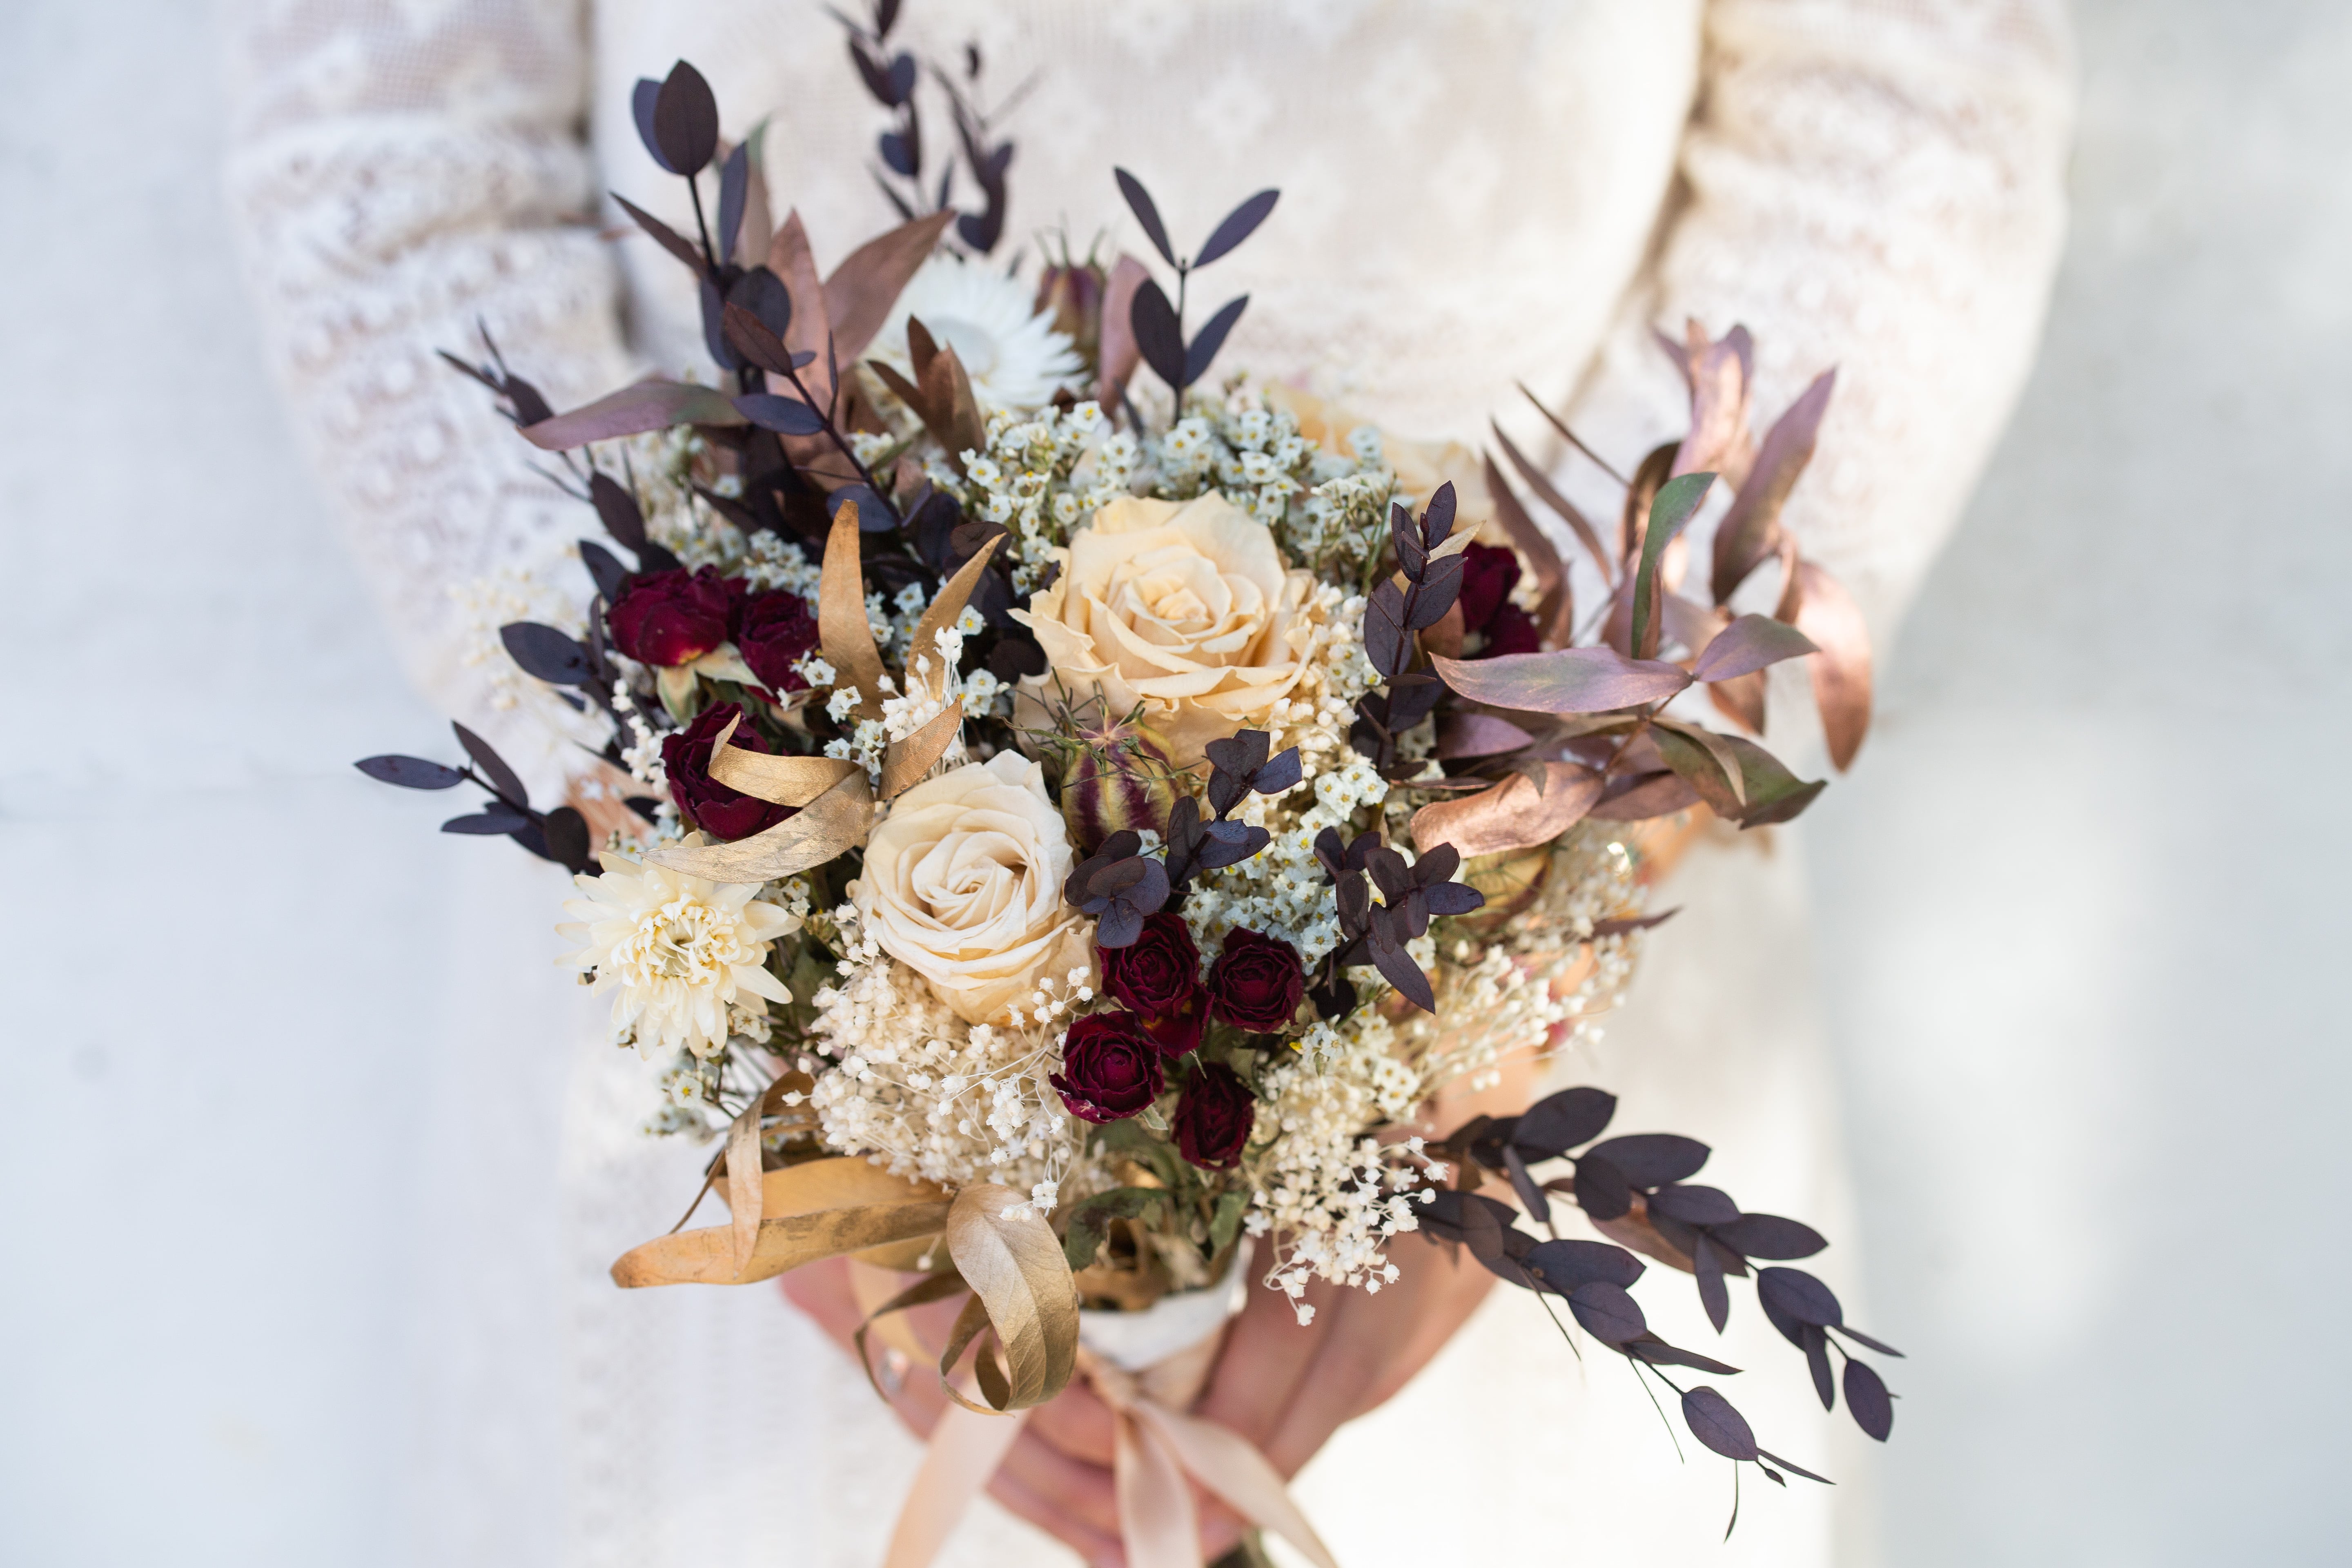 Mariage fleurs jaune et ivoire rose mariée/demoiselle d'honneur de mariage 10" Bouquet composition florale